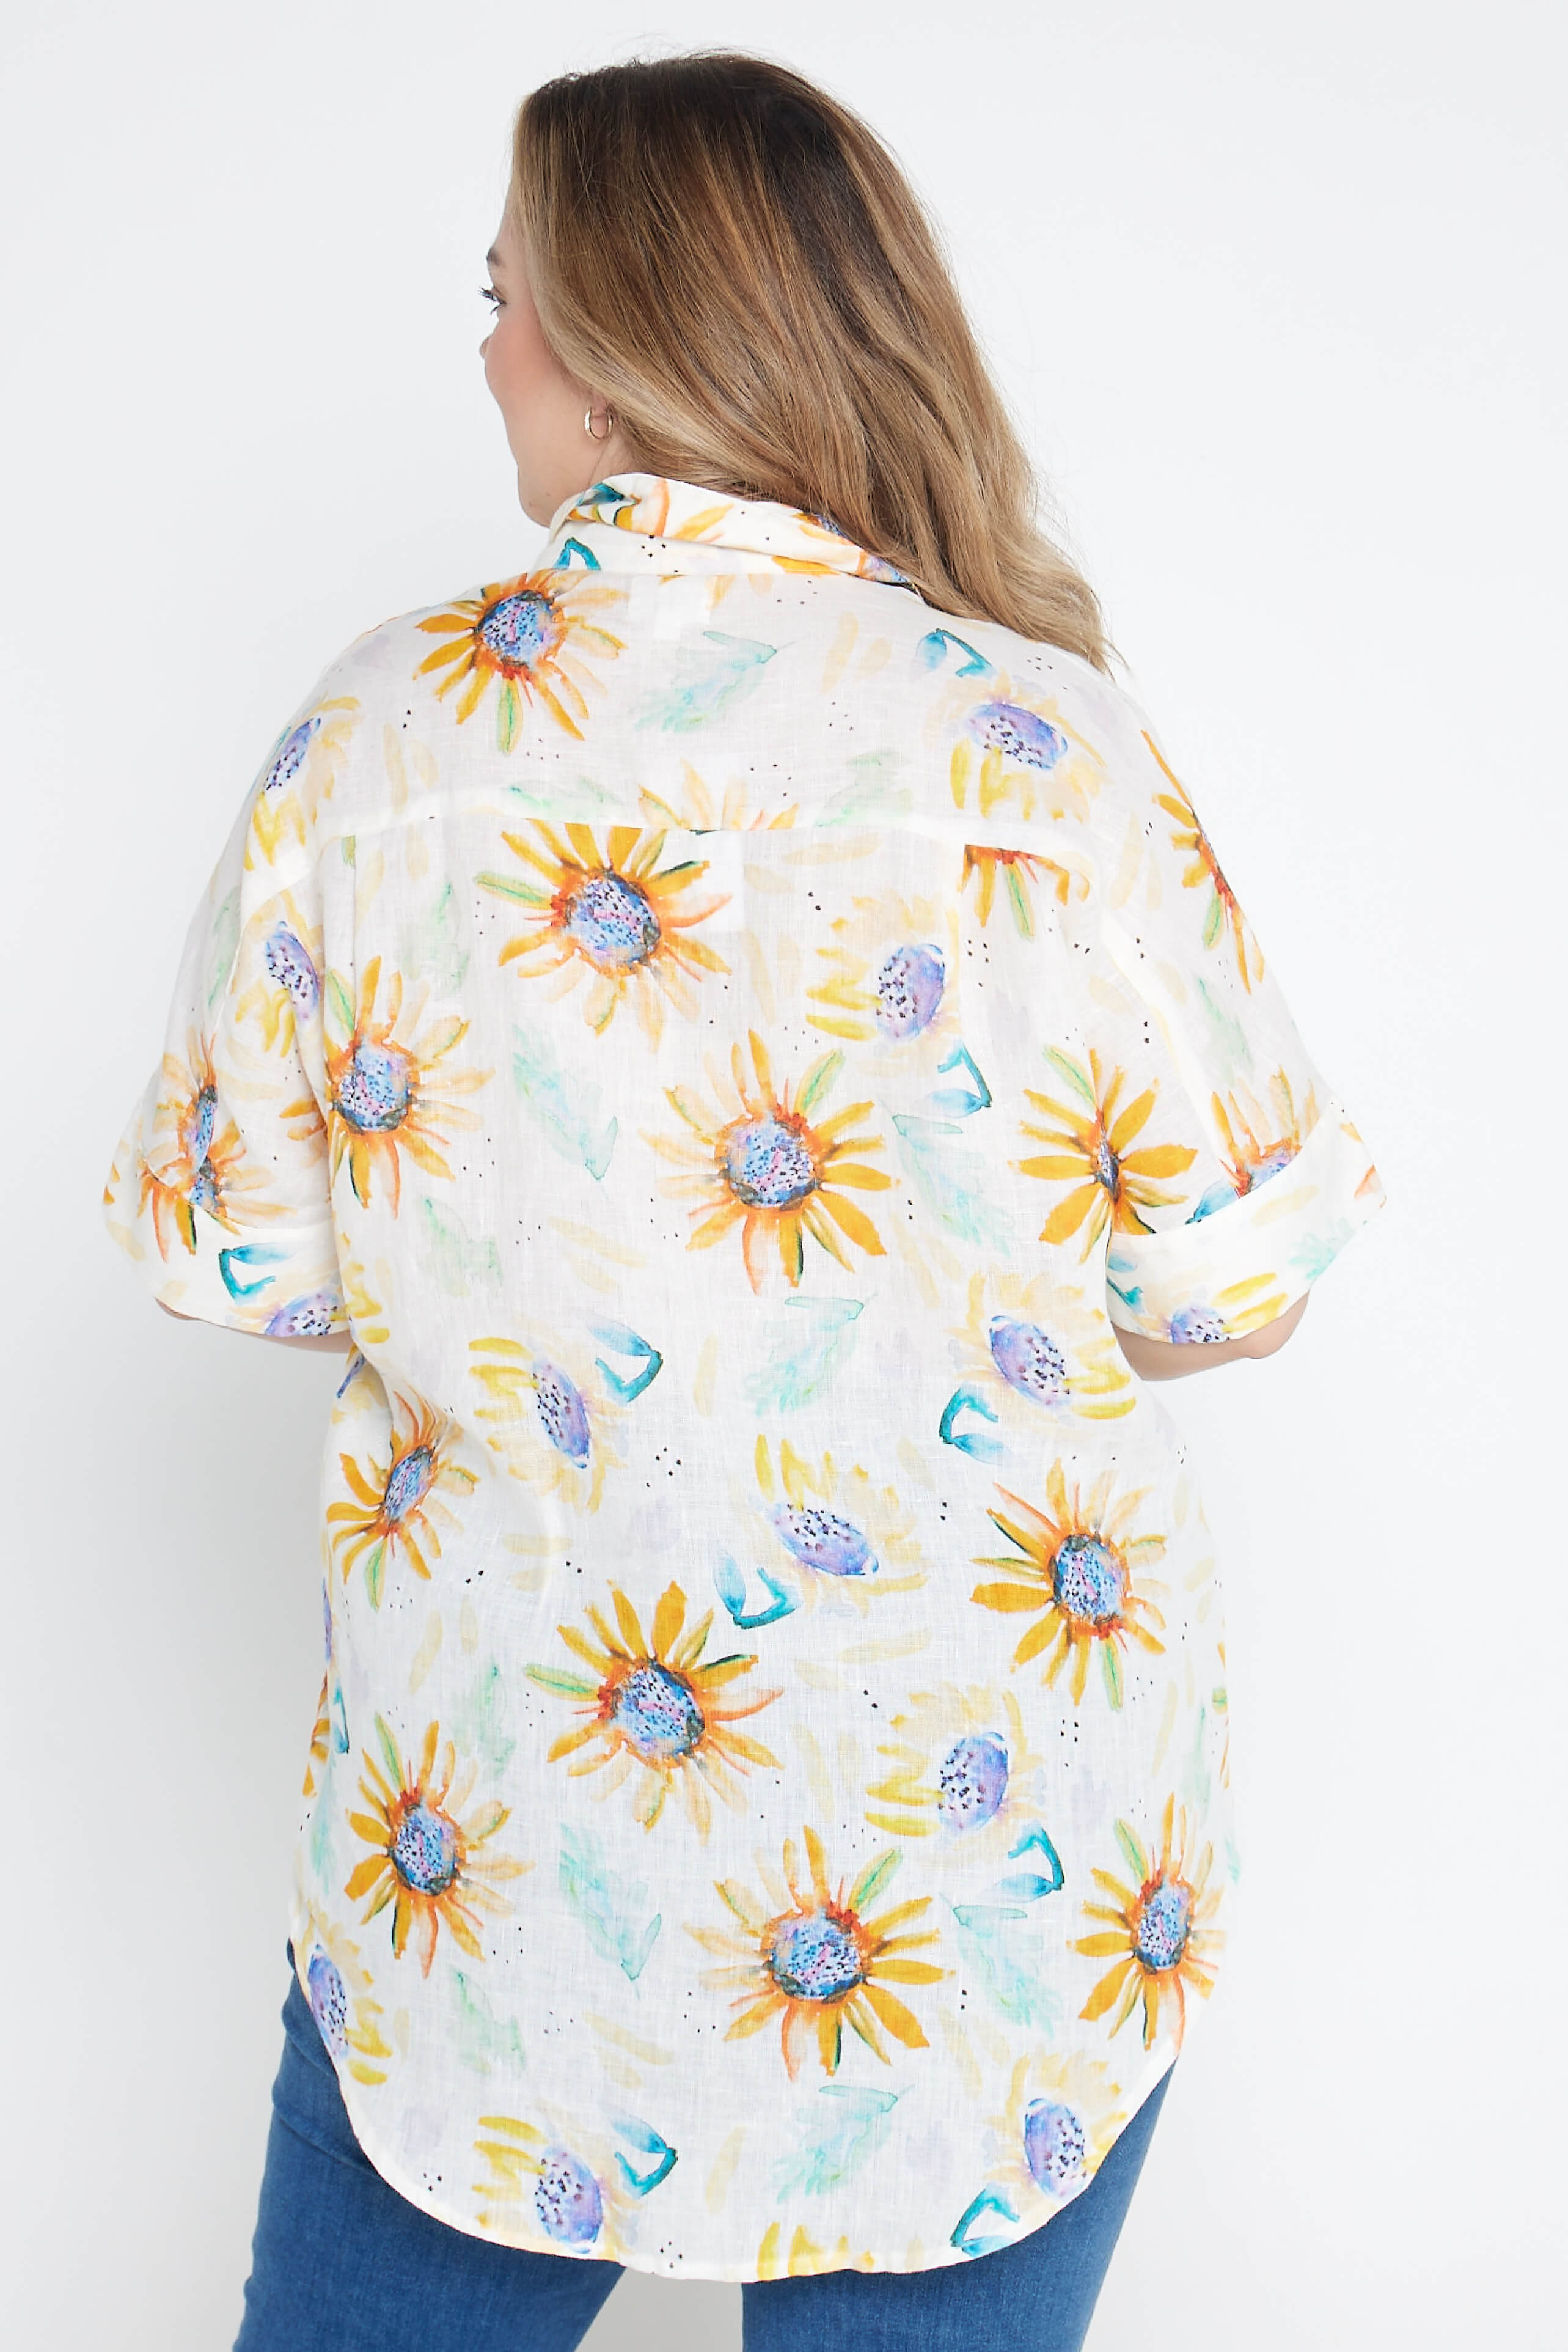 Sunflower Print Organic Linen Short Sleeve Shirt - Outback Linen Co